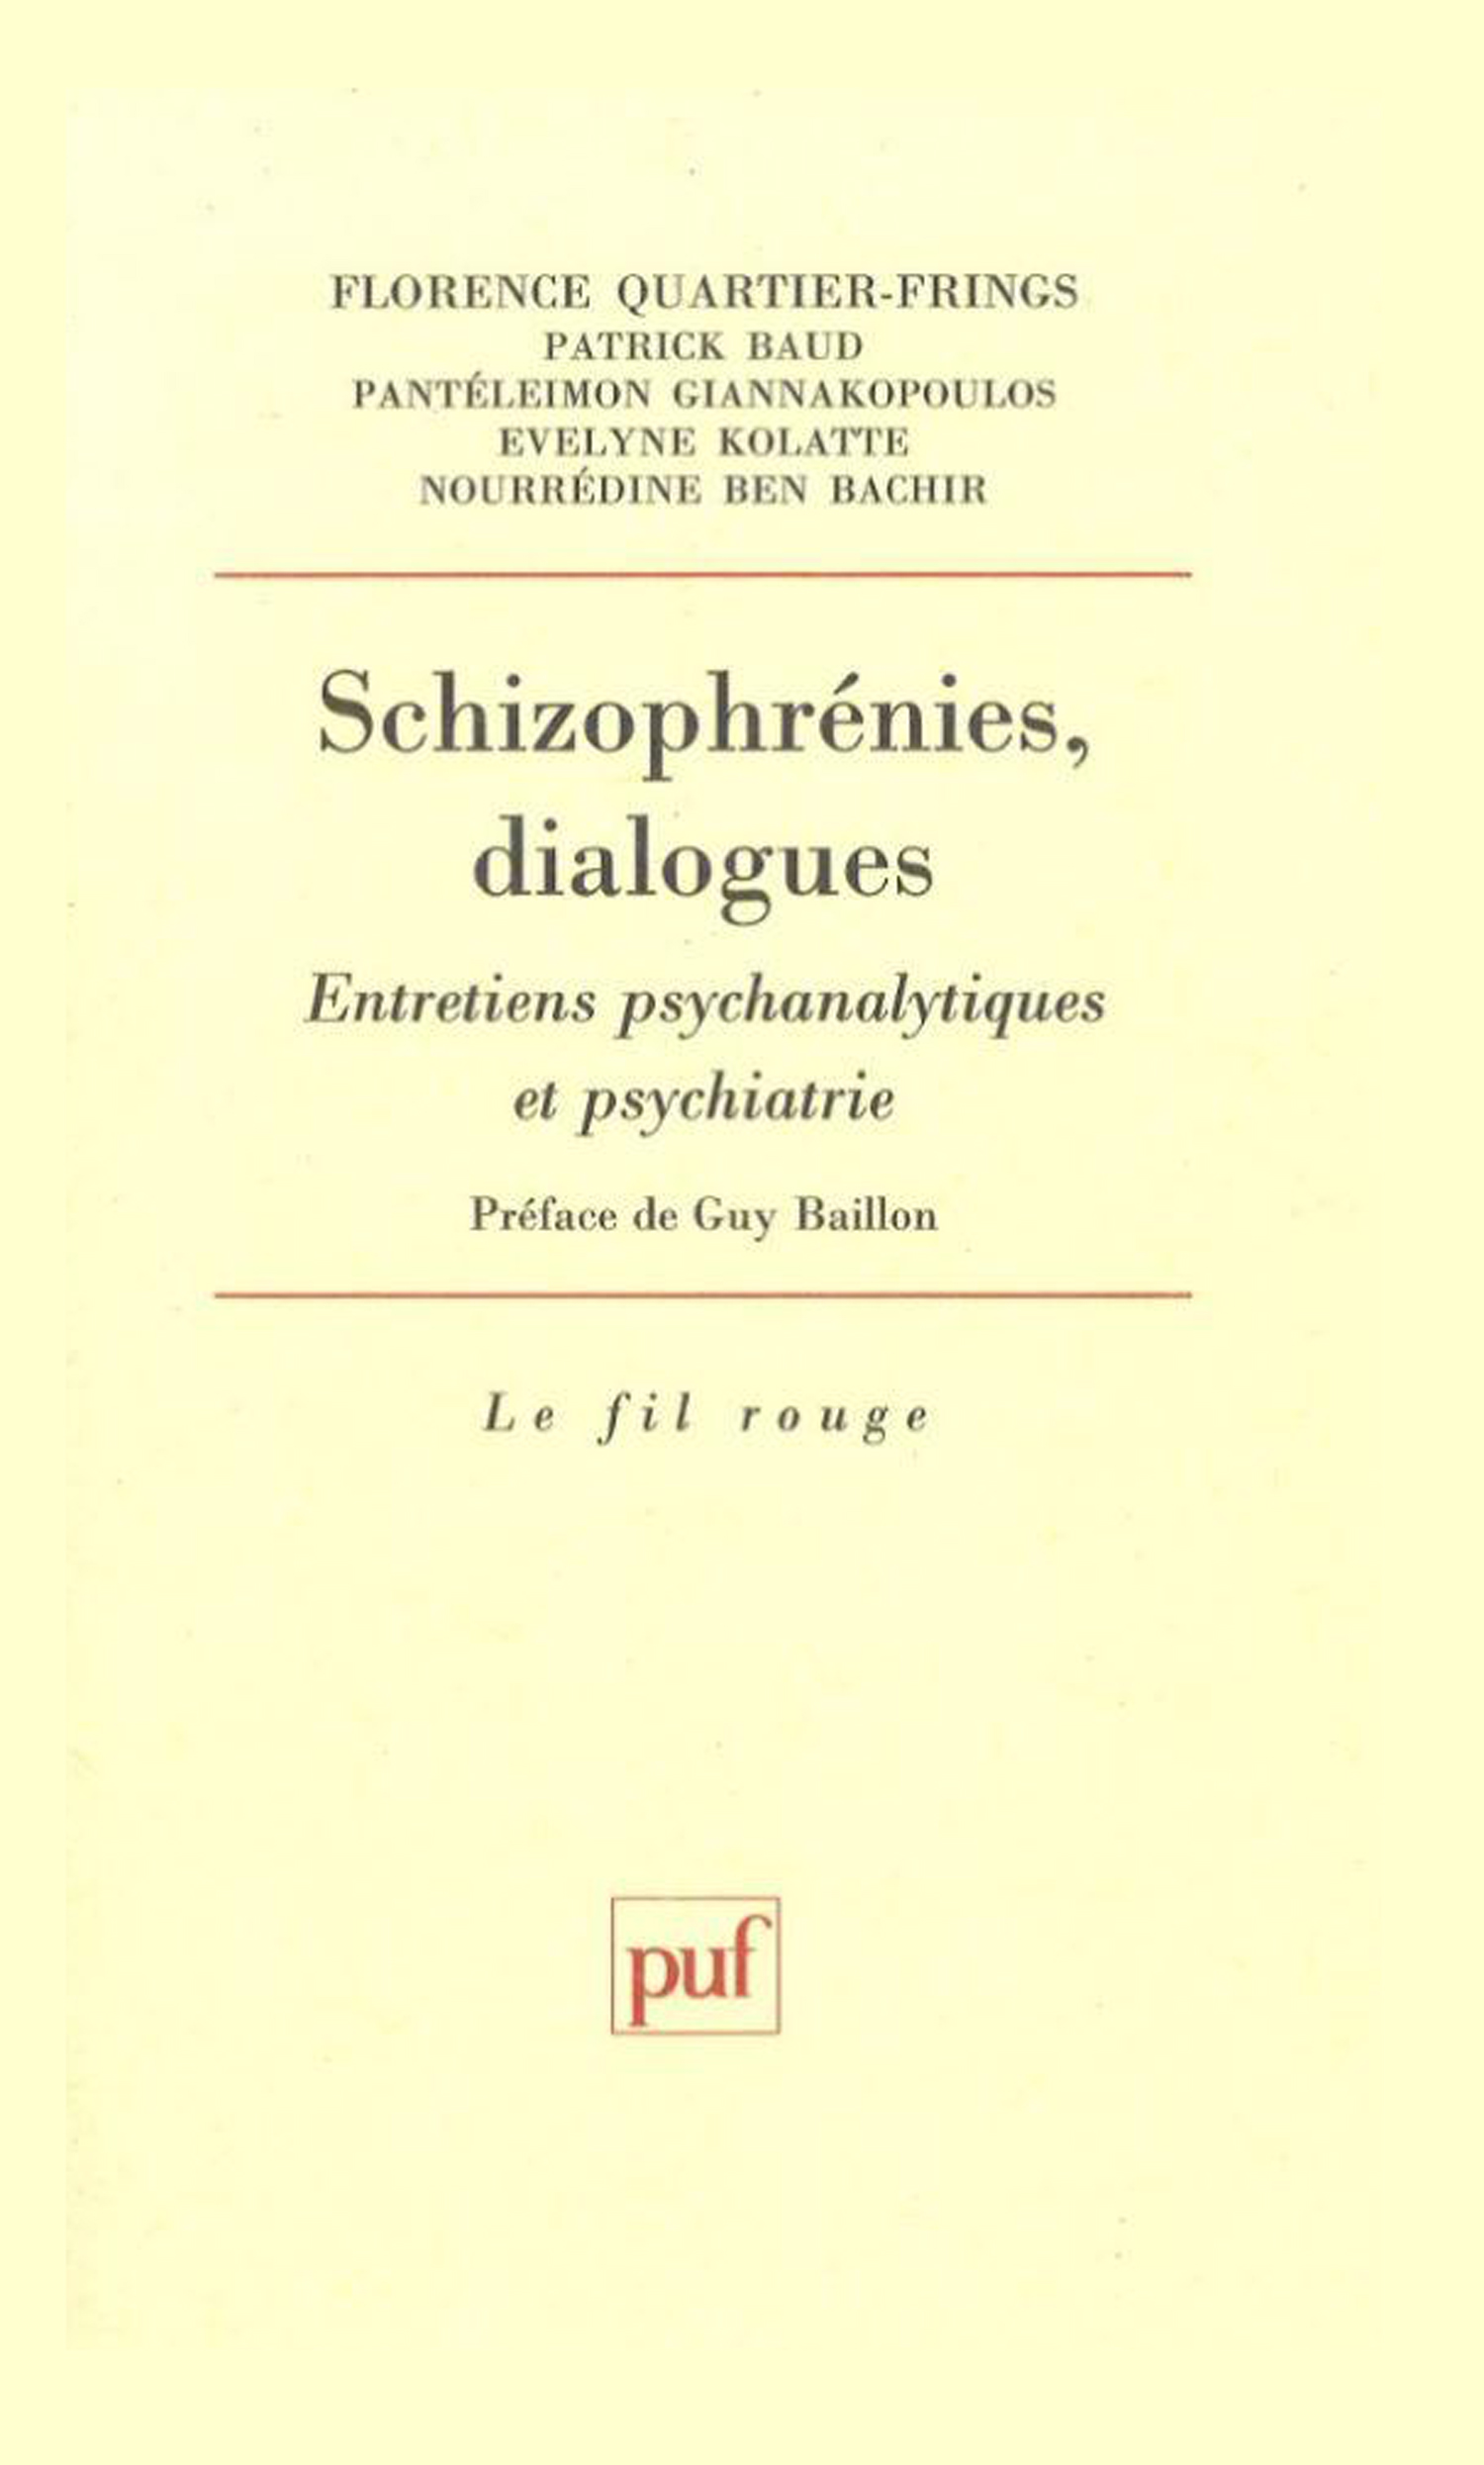 Schizophrénies, dialogues De Florence Quartier - Presses Universitaires de France